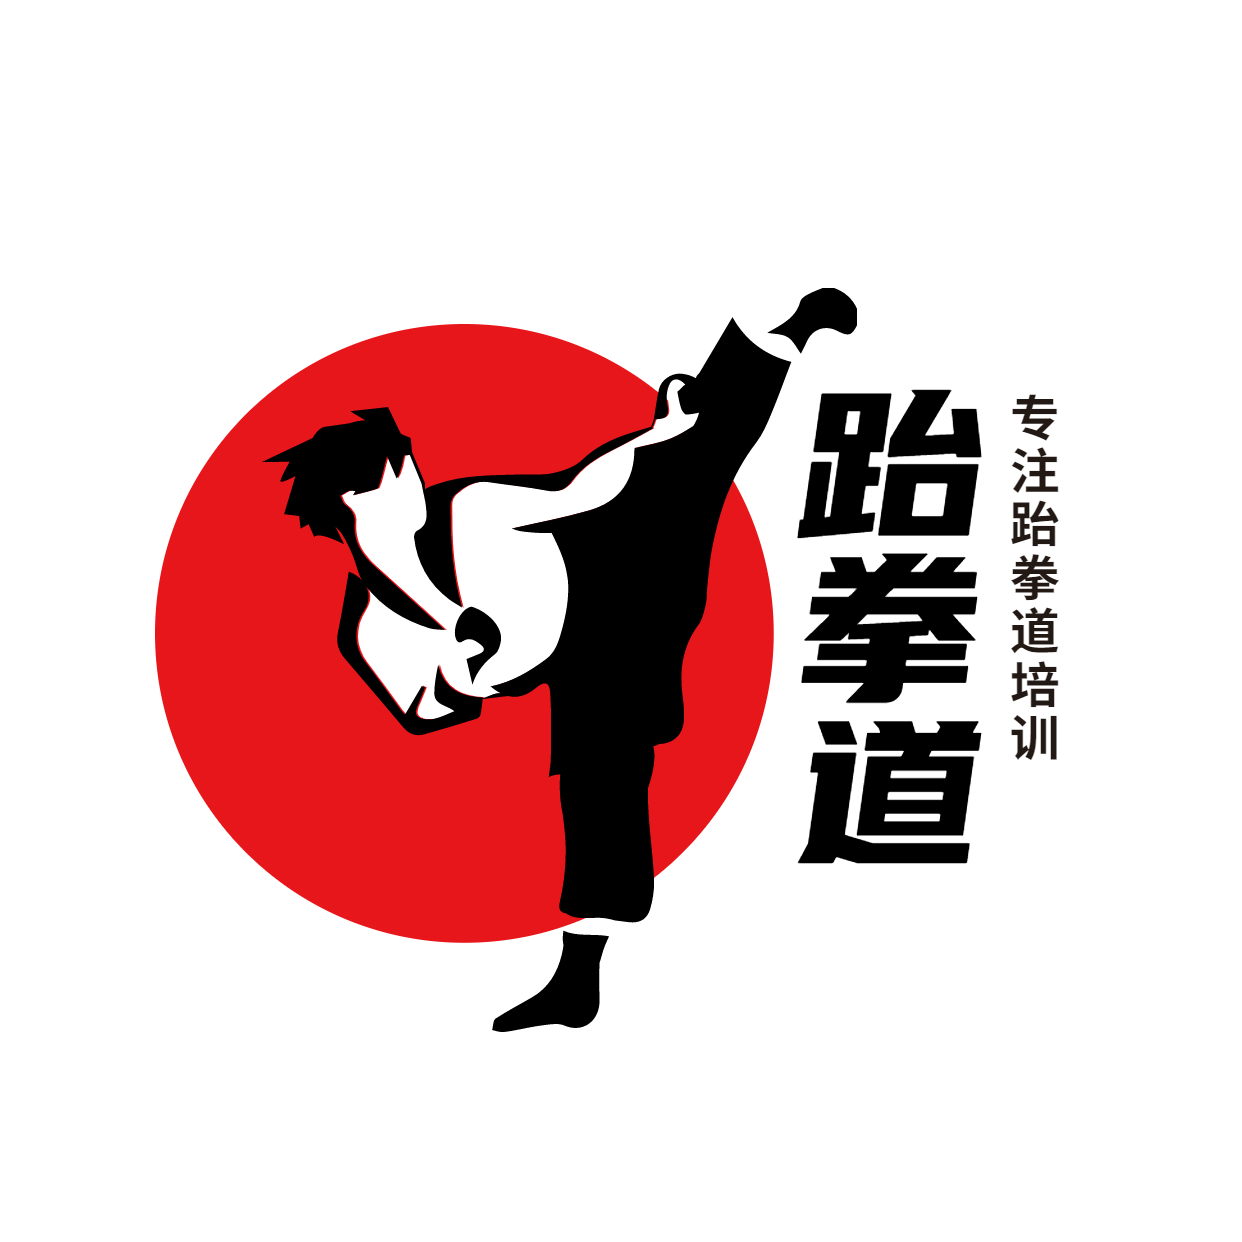 教育培训机构跆拳道头像logo